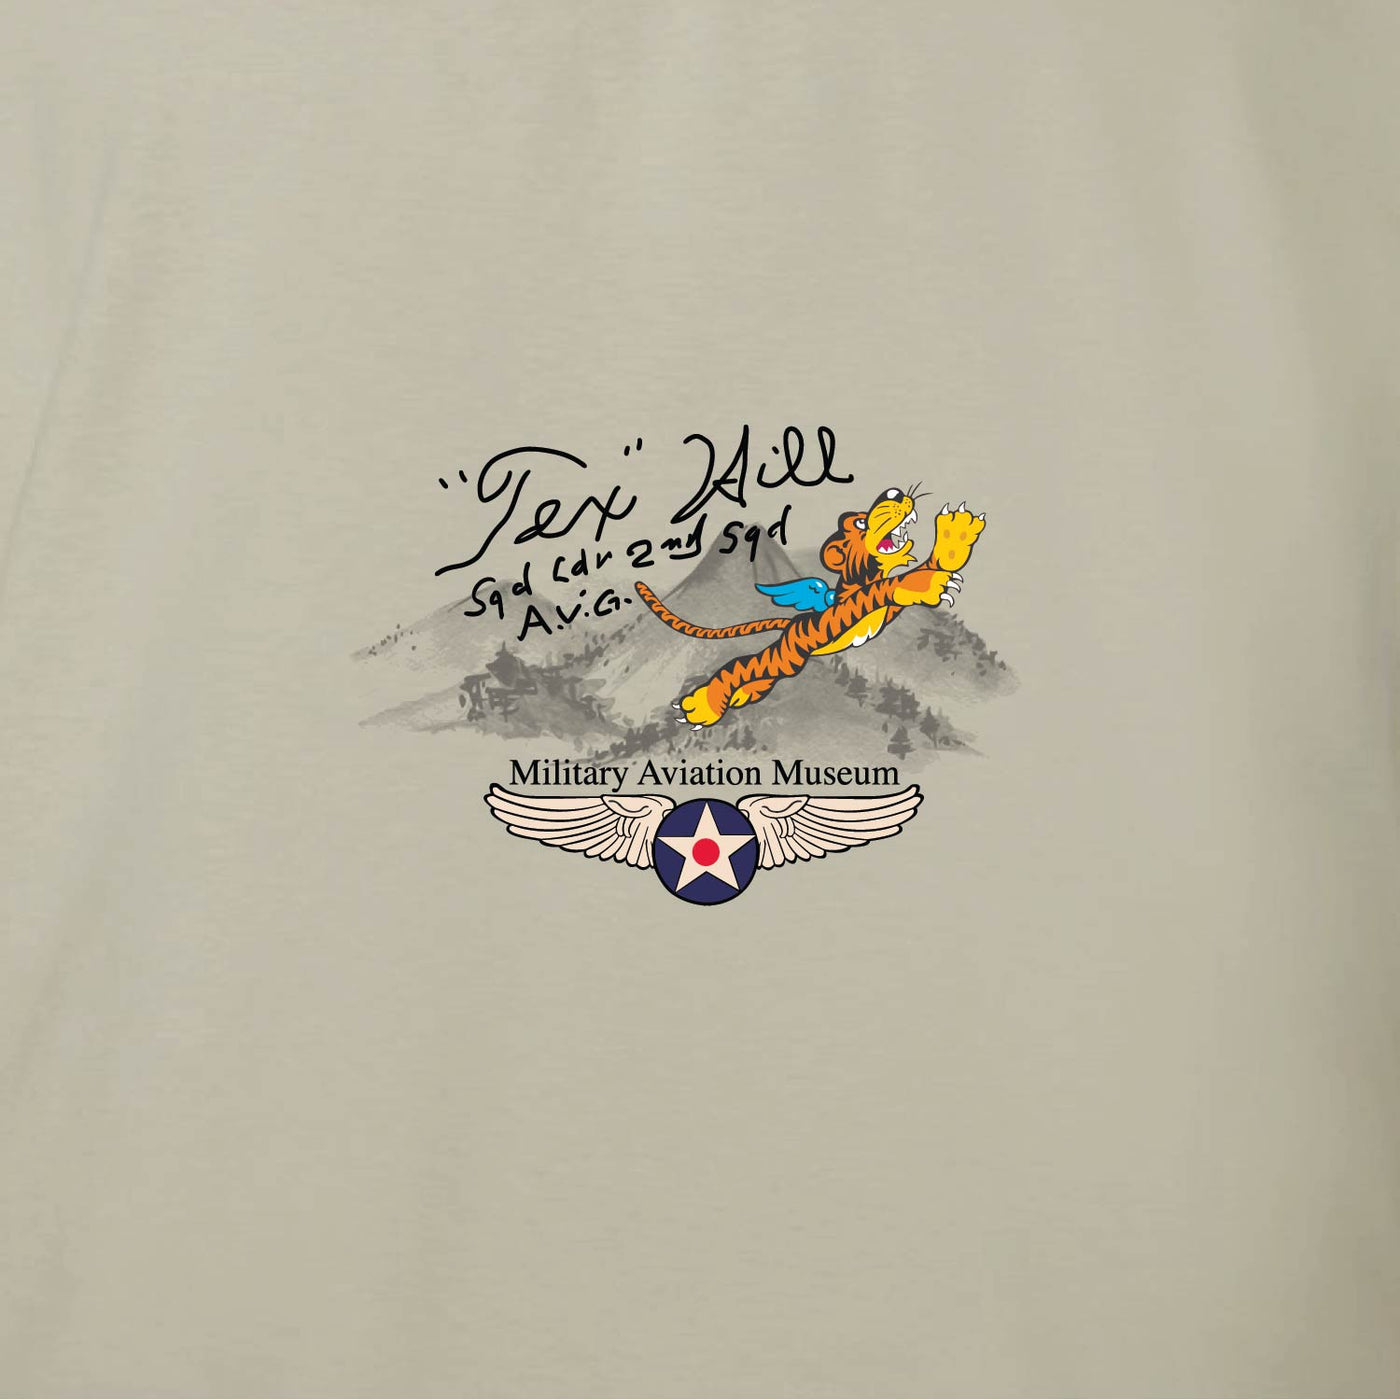 "Tex" Hill P-40 Warhawk Shirt